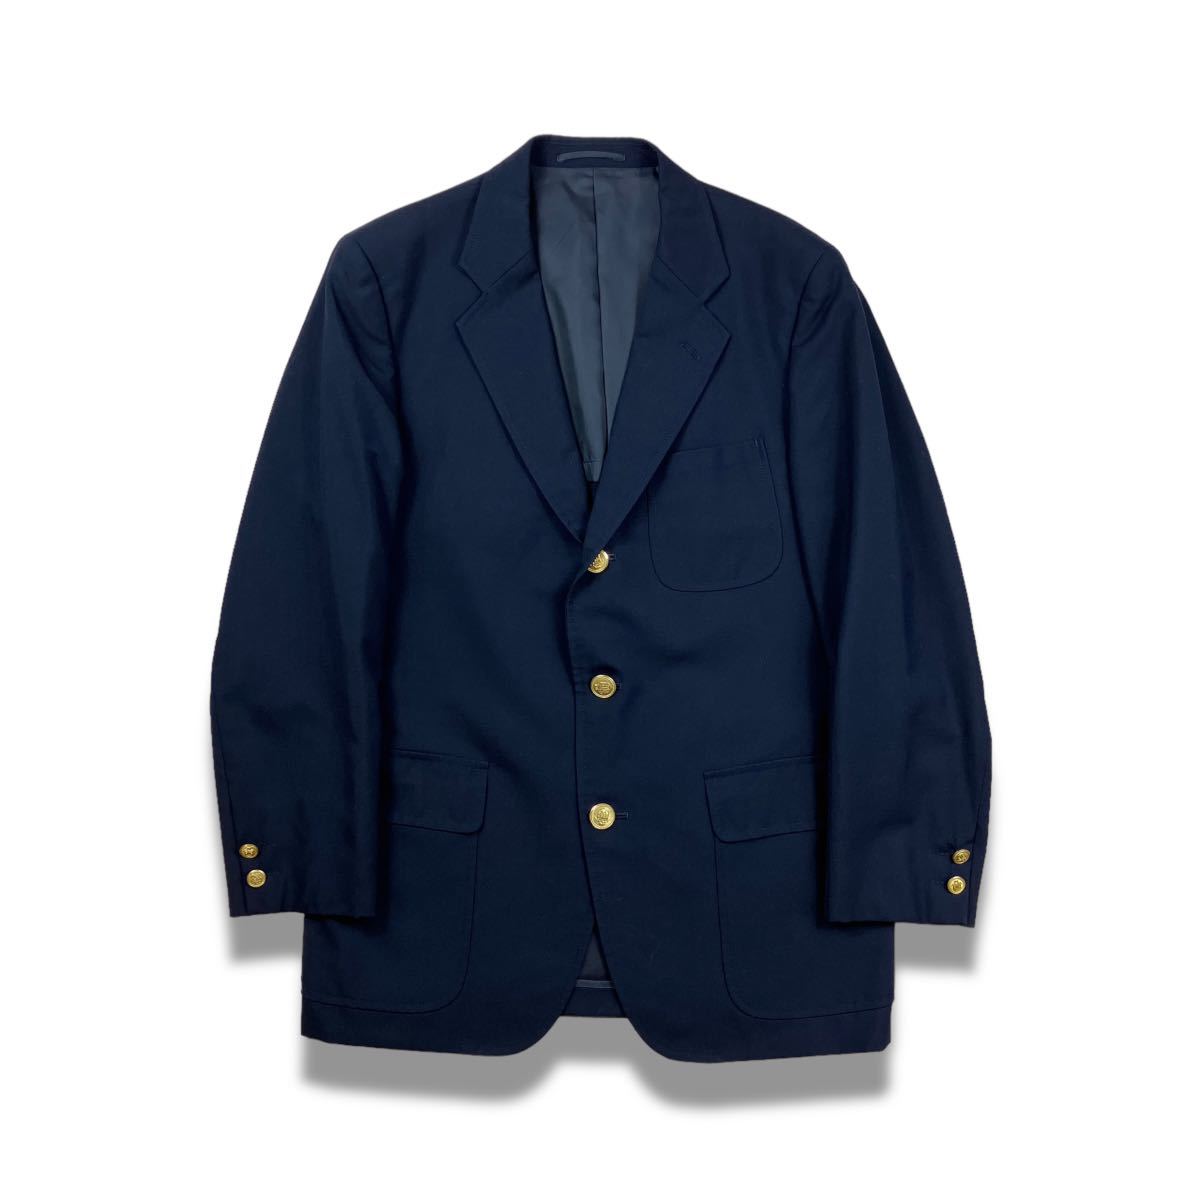 80s J.PRESS navy blazer ブレザー テーラードジャケット 紺ブレ 金ボタン 紺色 ジェイプレス ヴィンテージ ビンテージ ネイビー 3B